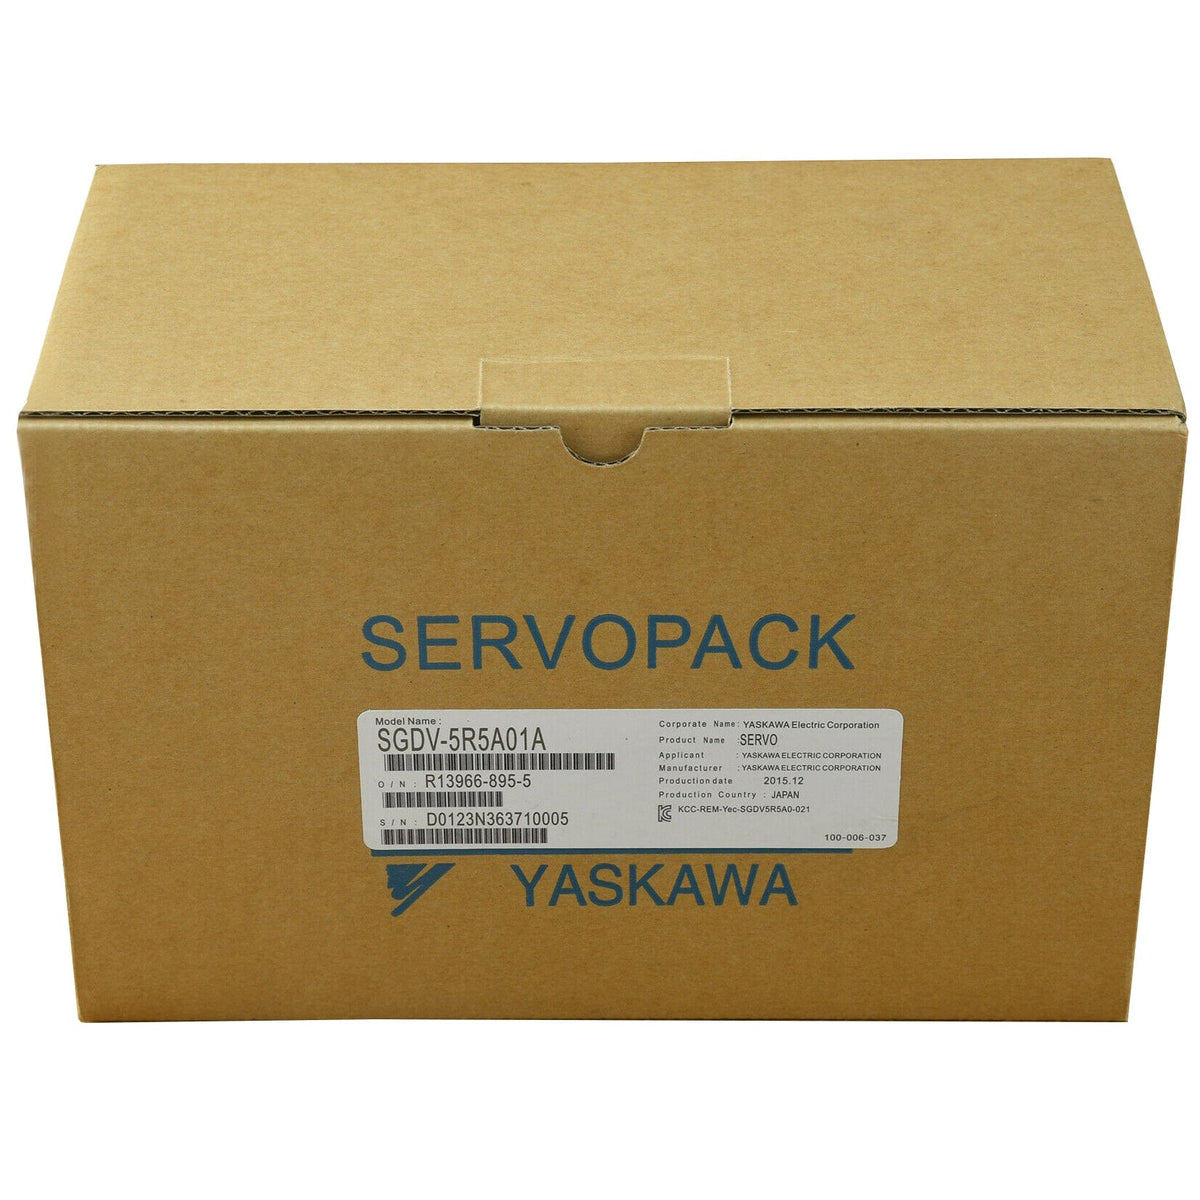 Yaskawa SGDV-5R5A01A SGDV-5R5A01A002000 Servopack Driver